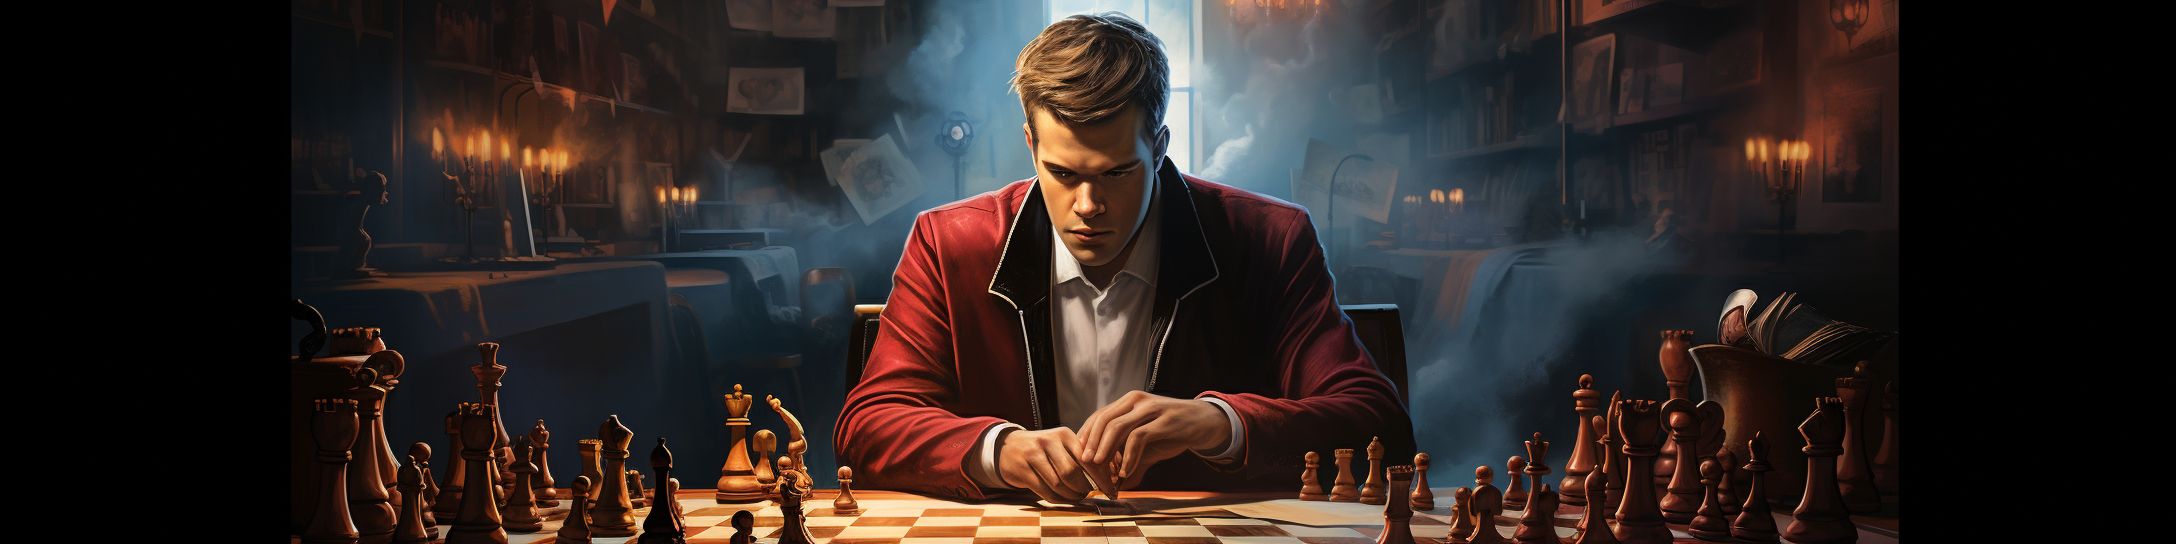 L'impact de Magnus Carlsen sur l'univers des échecs